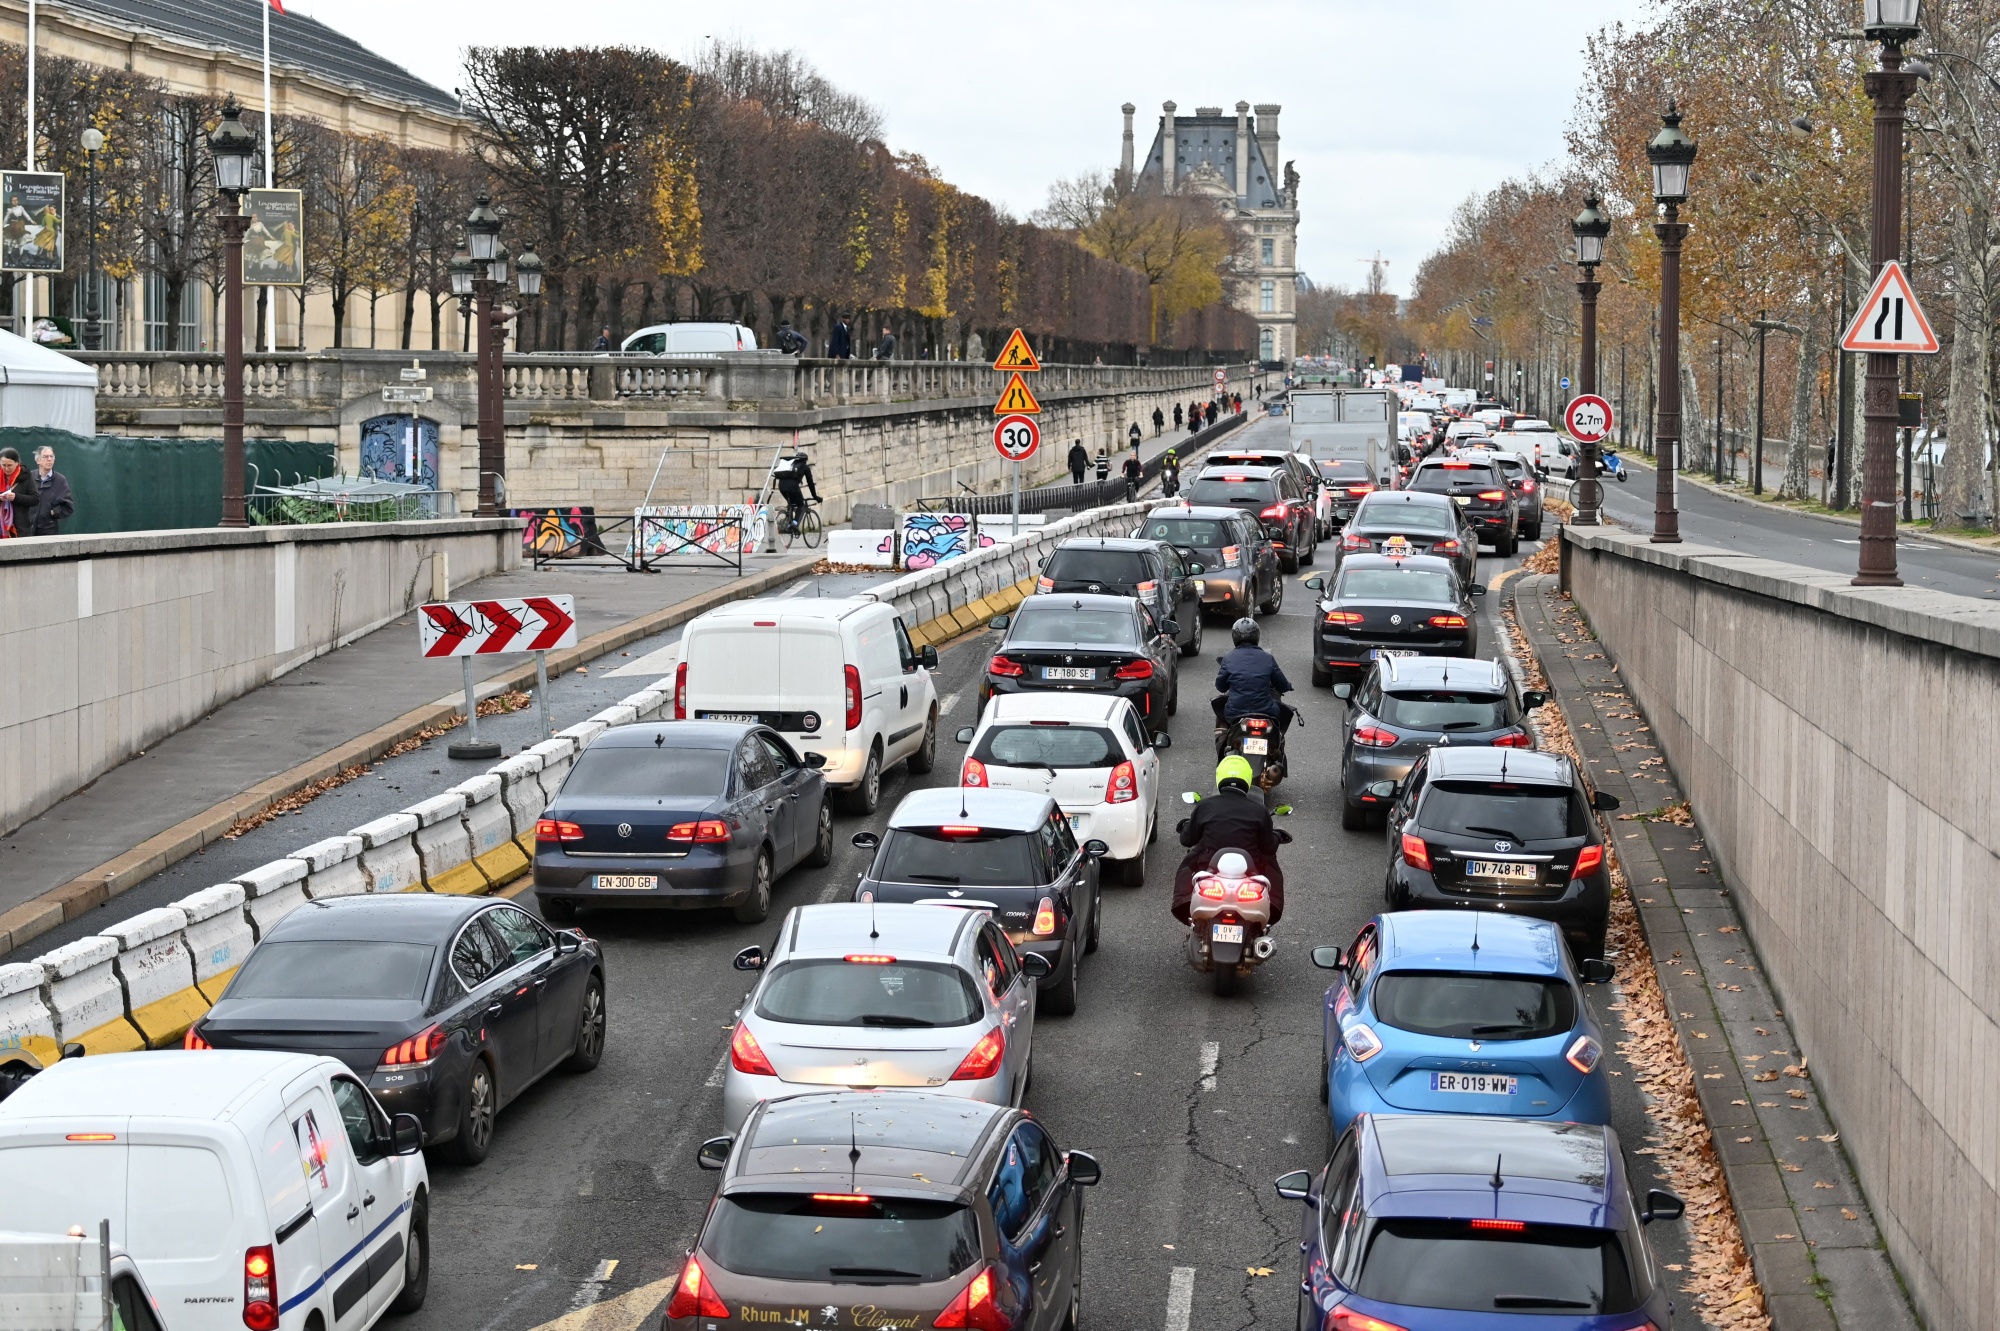 New Paris Car Ban Will Target Through Traffic - Bloomberg